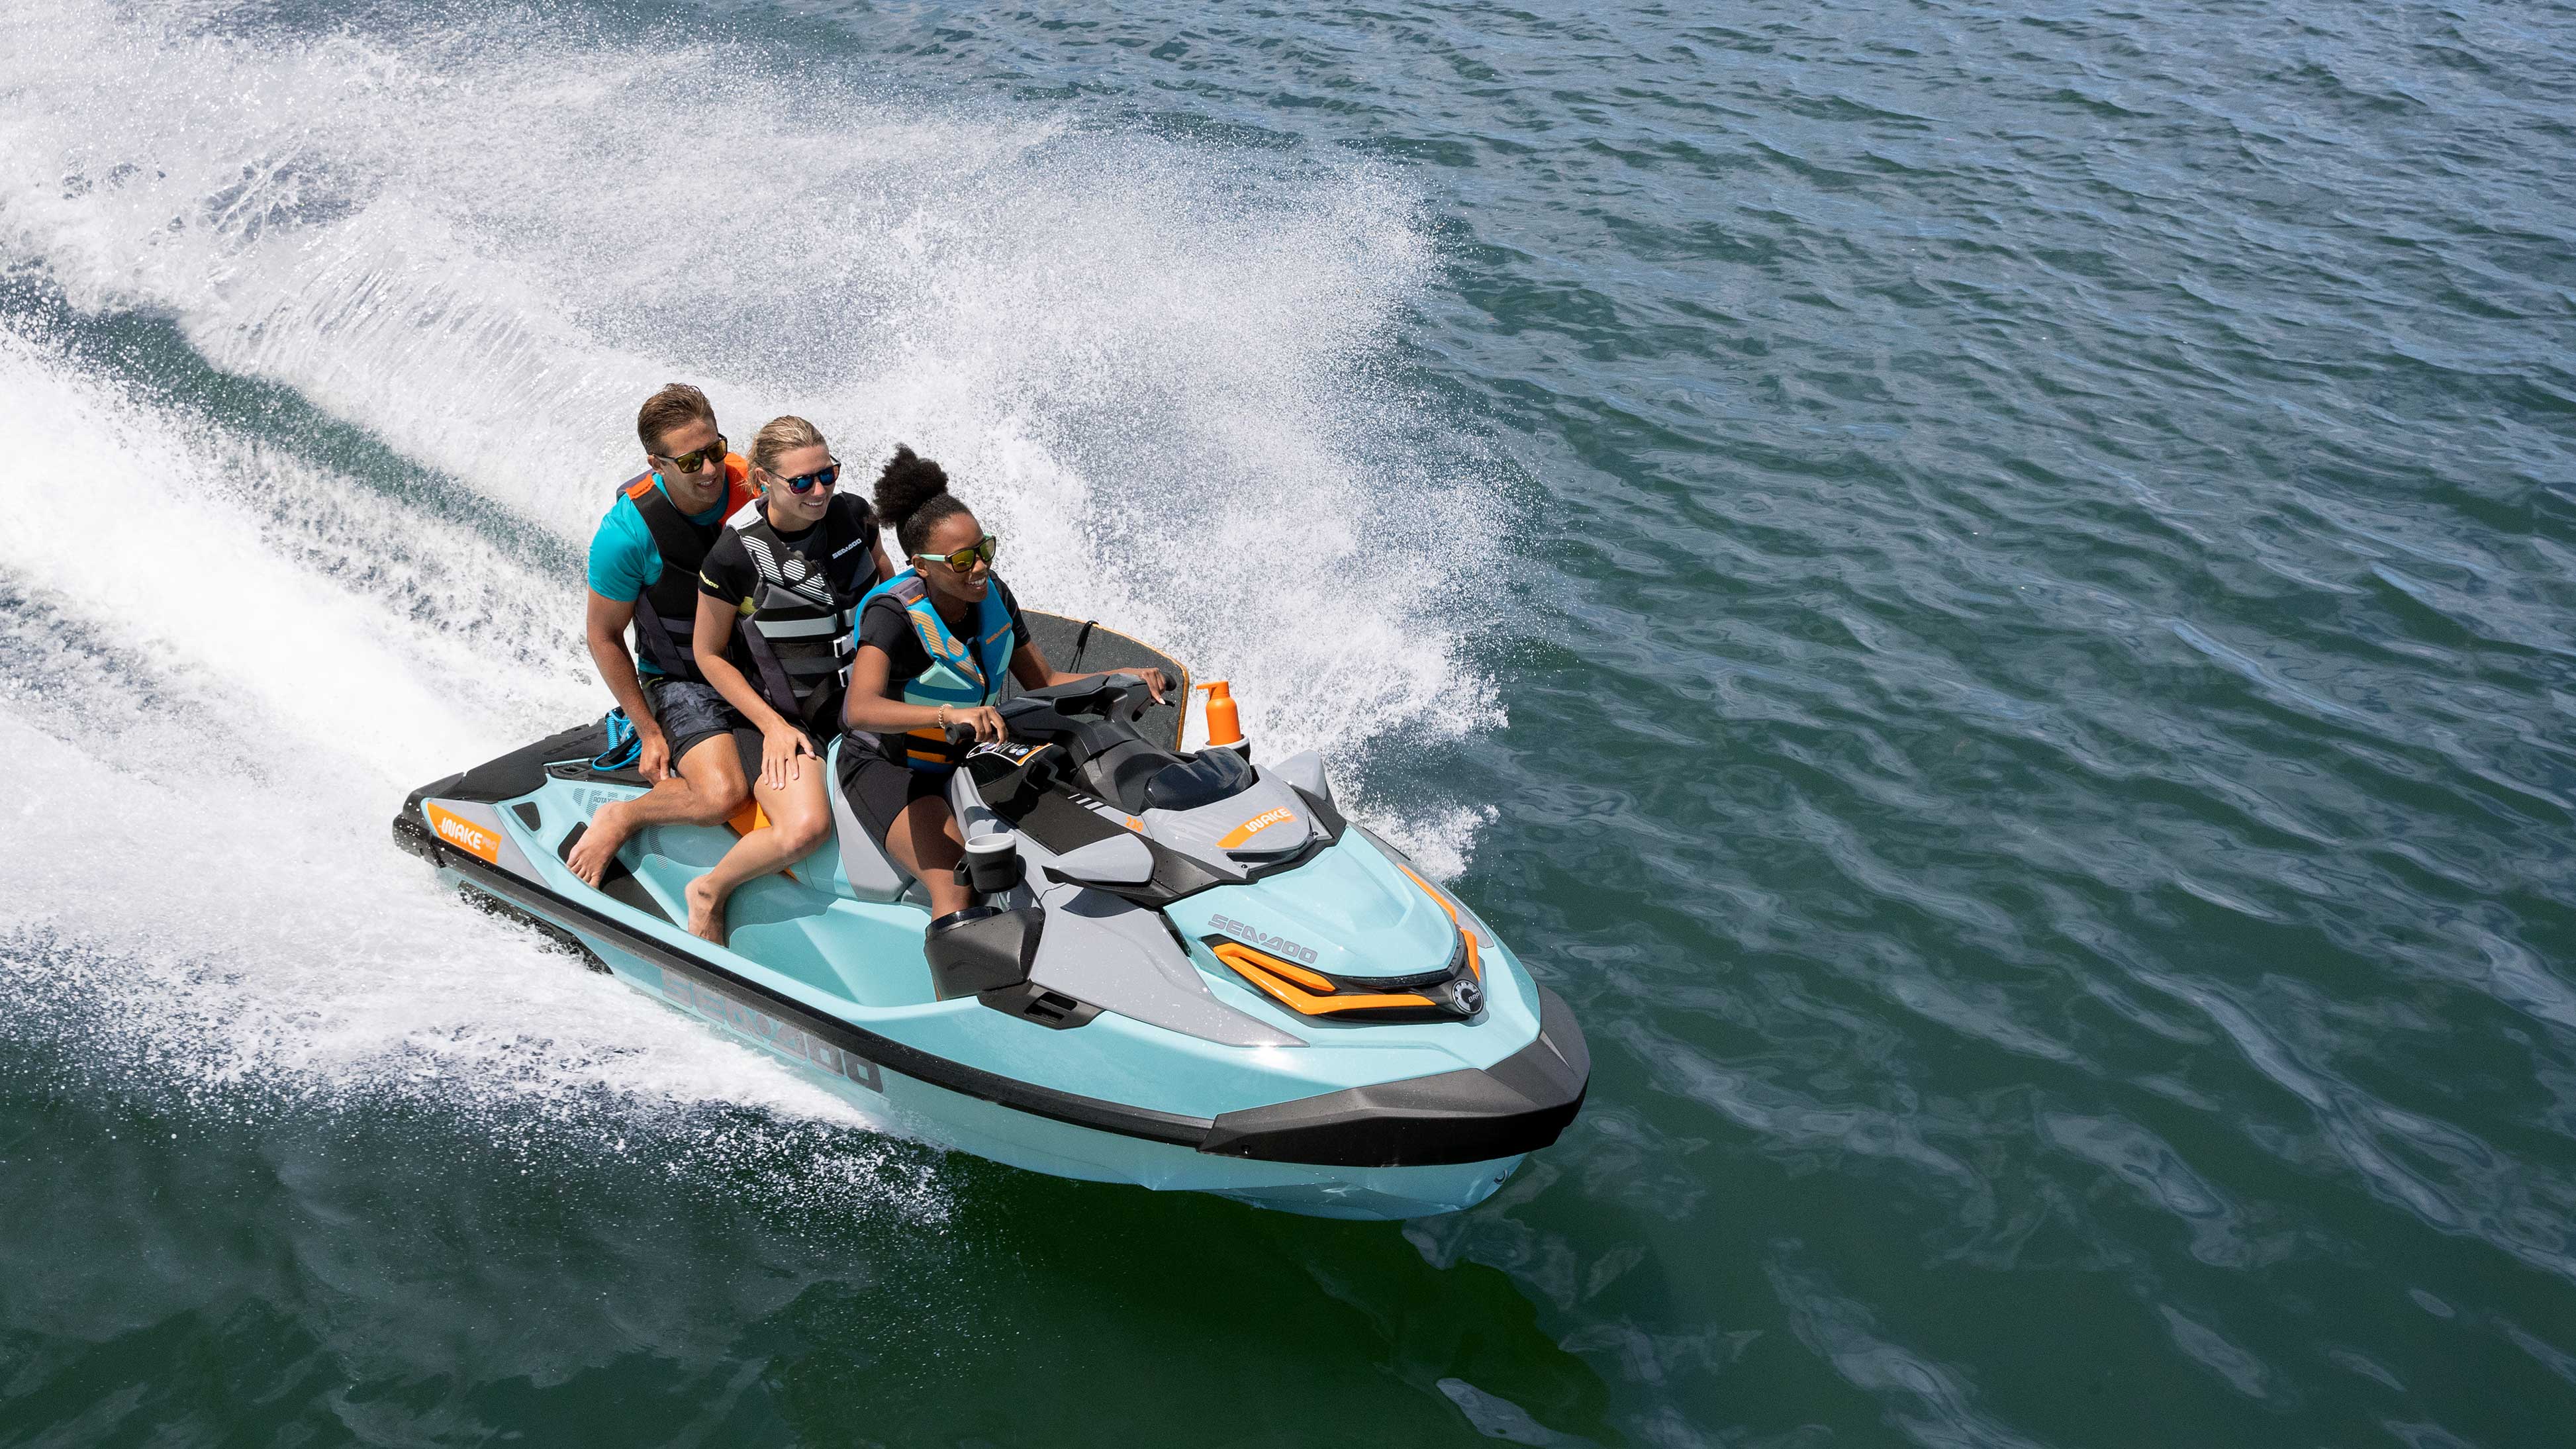 三个人骑着一台 Sea-Doo 摩托艇